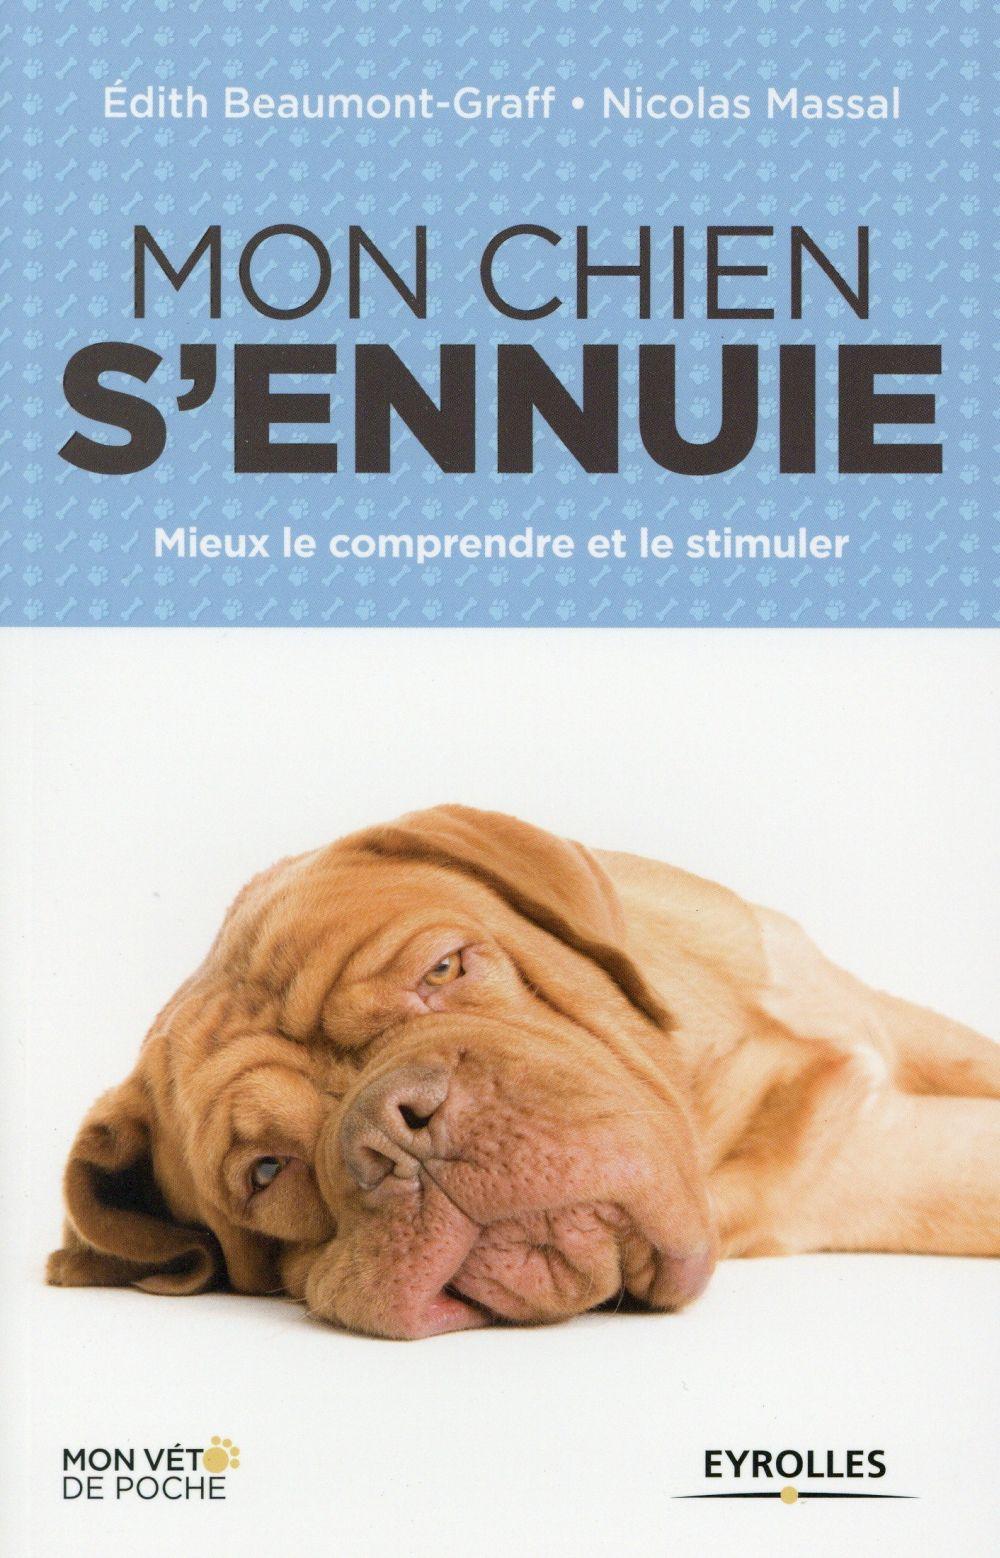 Vente Livre :                                    Mon chien s'ennuie ; mieux le comprendre et le stimuler
- Nicolas Massal  - Édith Beaumont-Graff                                     